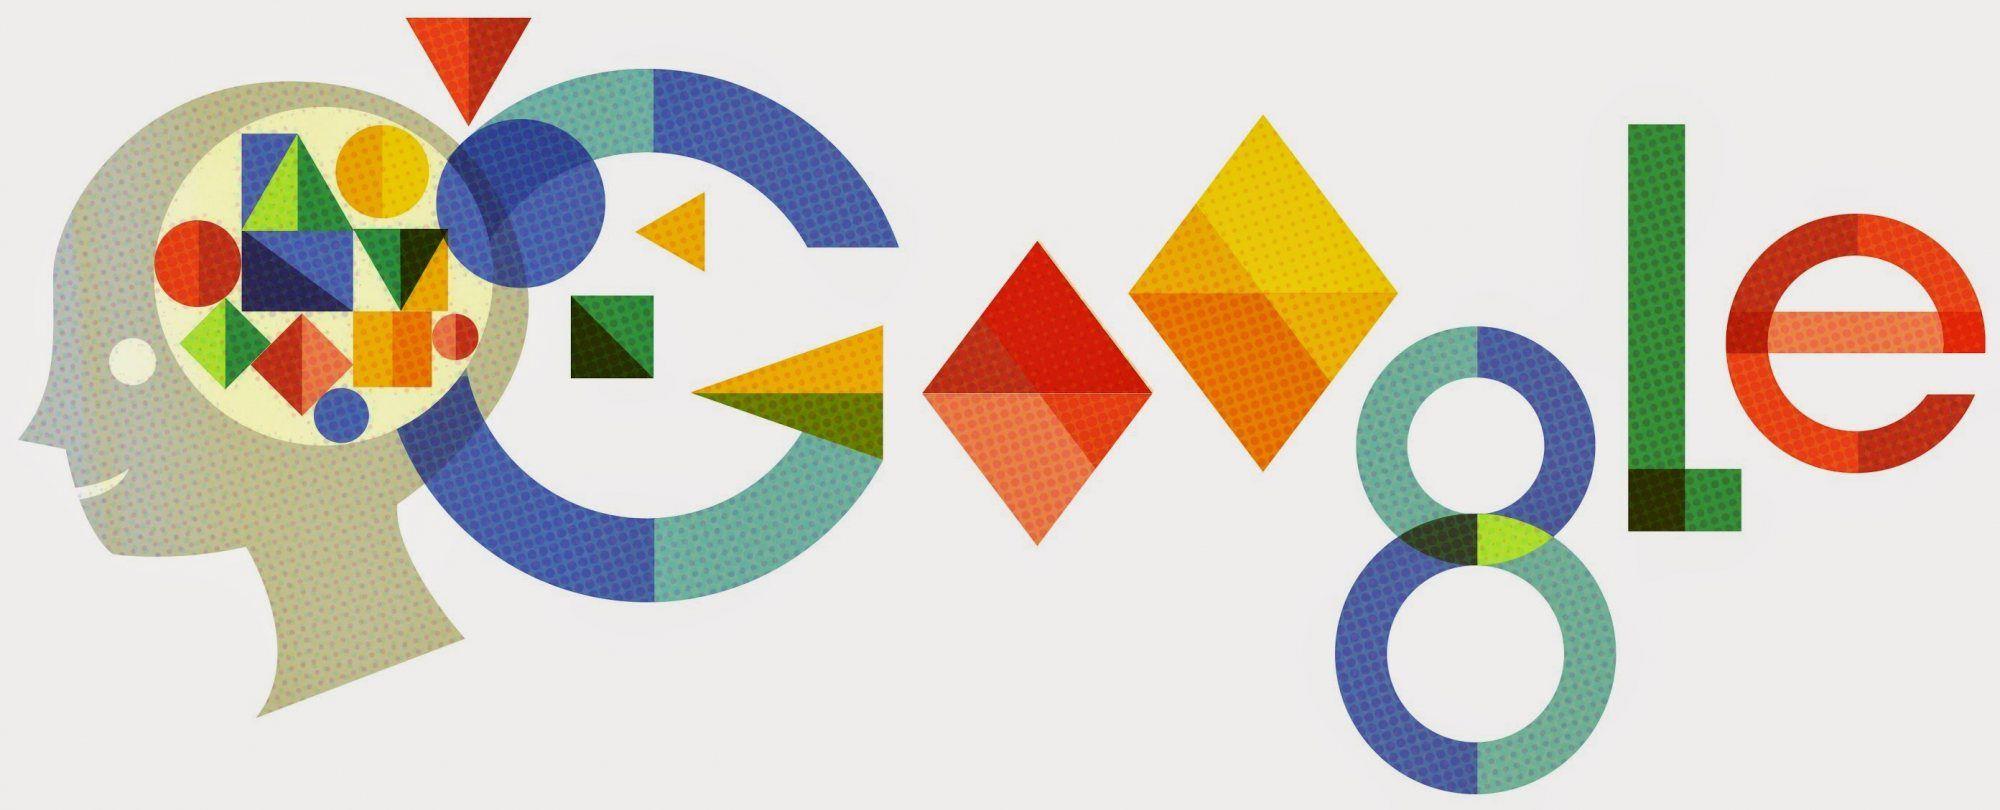 Google Doodle Logo - Anna Freud Google Doodle, Sigmund Freud's Daughter